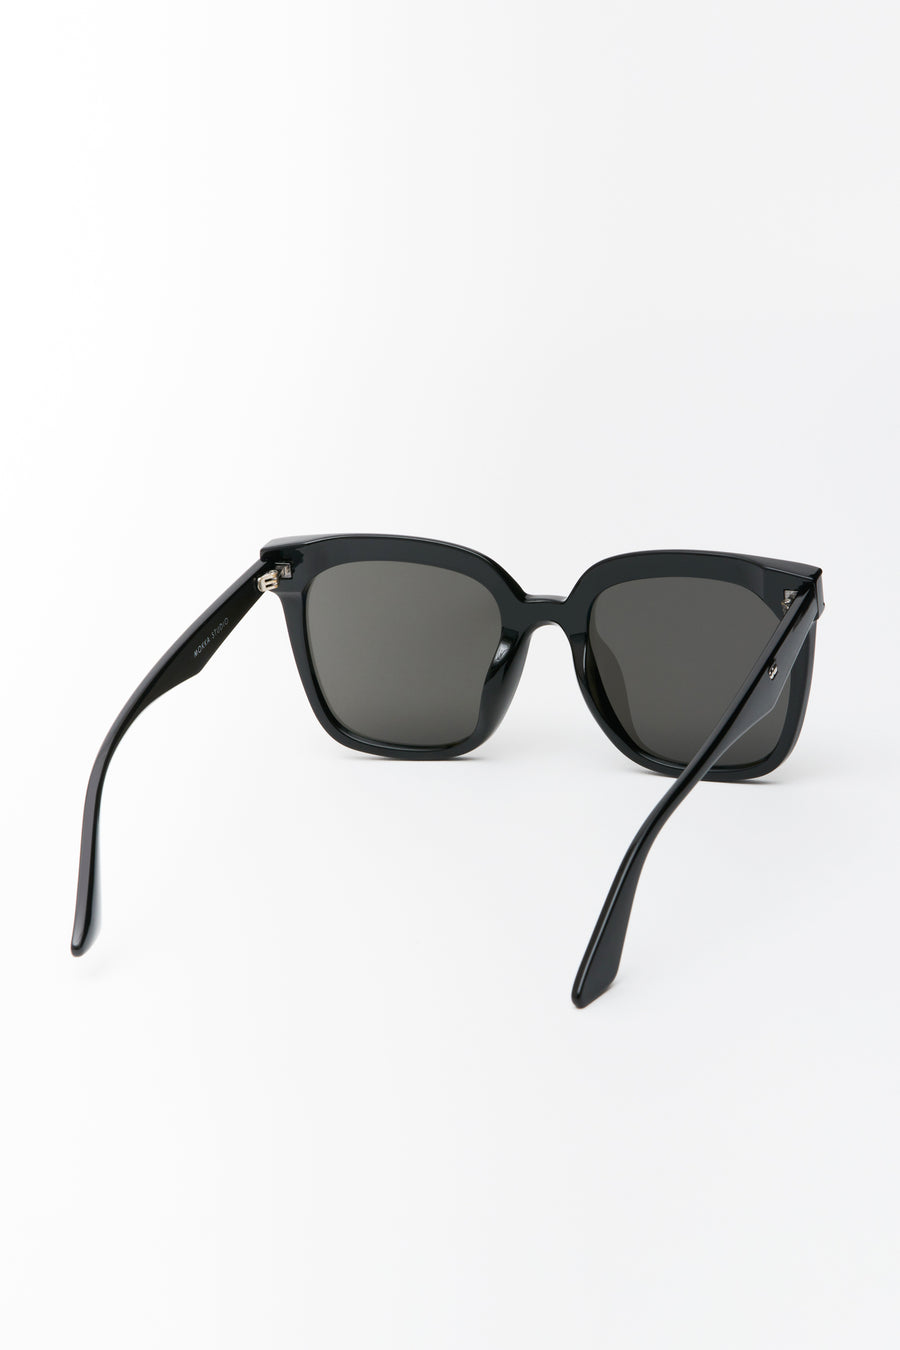 Dom Sunglasses Black/Smoke Lens